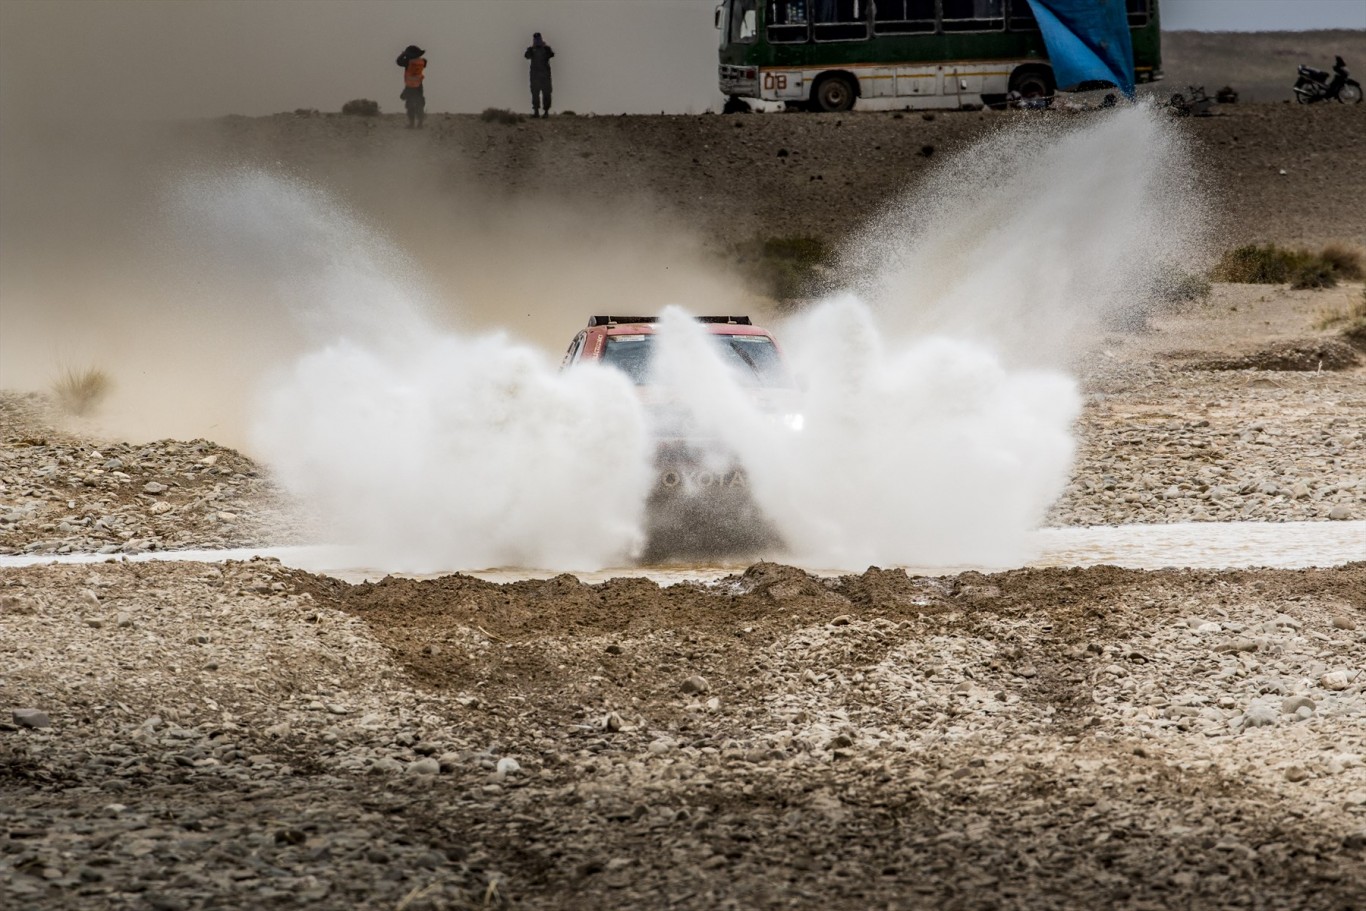 Lower altitude beckons for Toyota Gazoo Racing SA at Dakar 2017